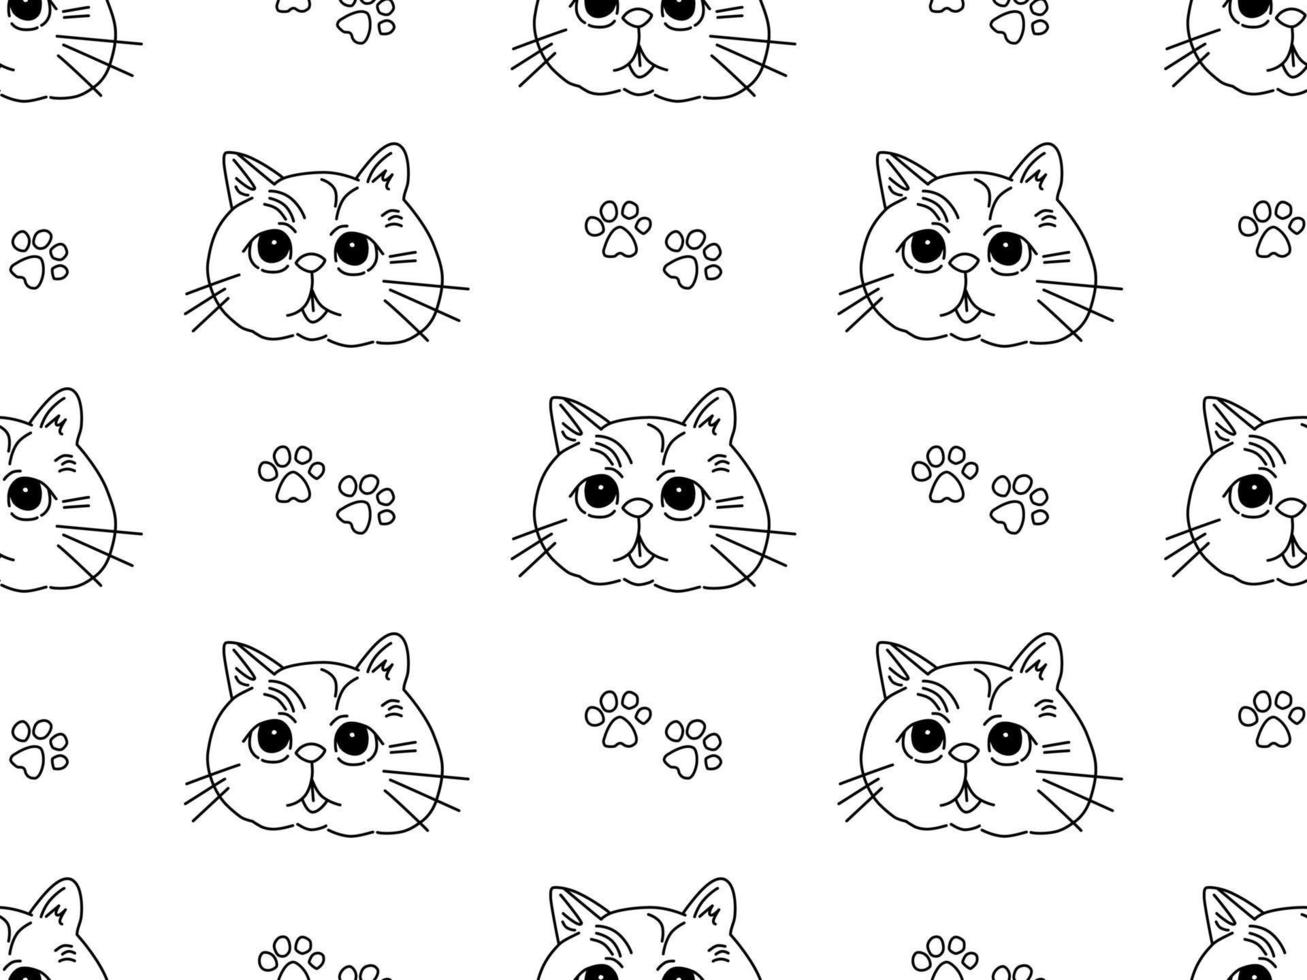 gato, caricatura, carácter, seamless, patrón, blanco, plano de fondo vector